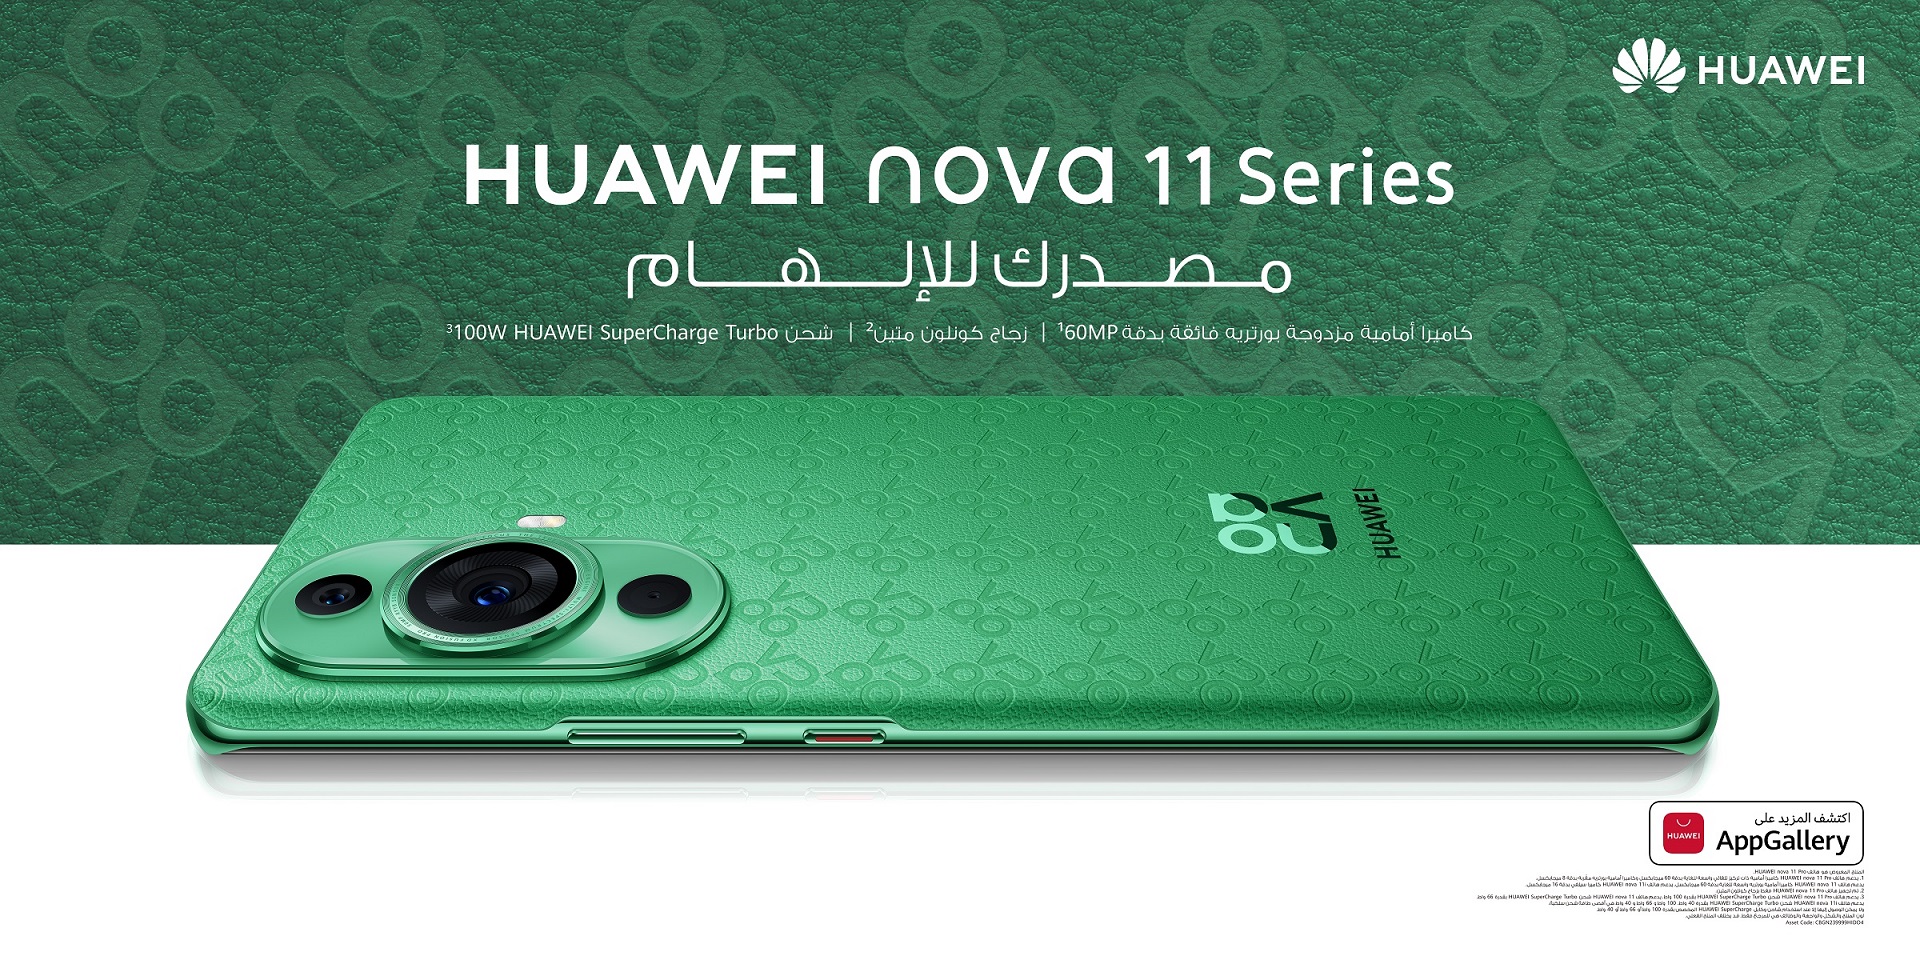 هواوي تطلق سلسلة nova 11 في الإمارات بتصميم جديد فائق الروعة ونظام كاميرا بأداء متميز لصور السيلفي